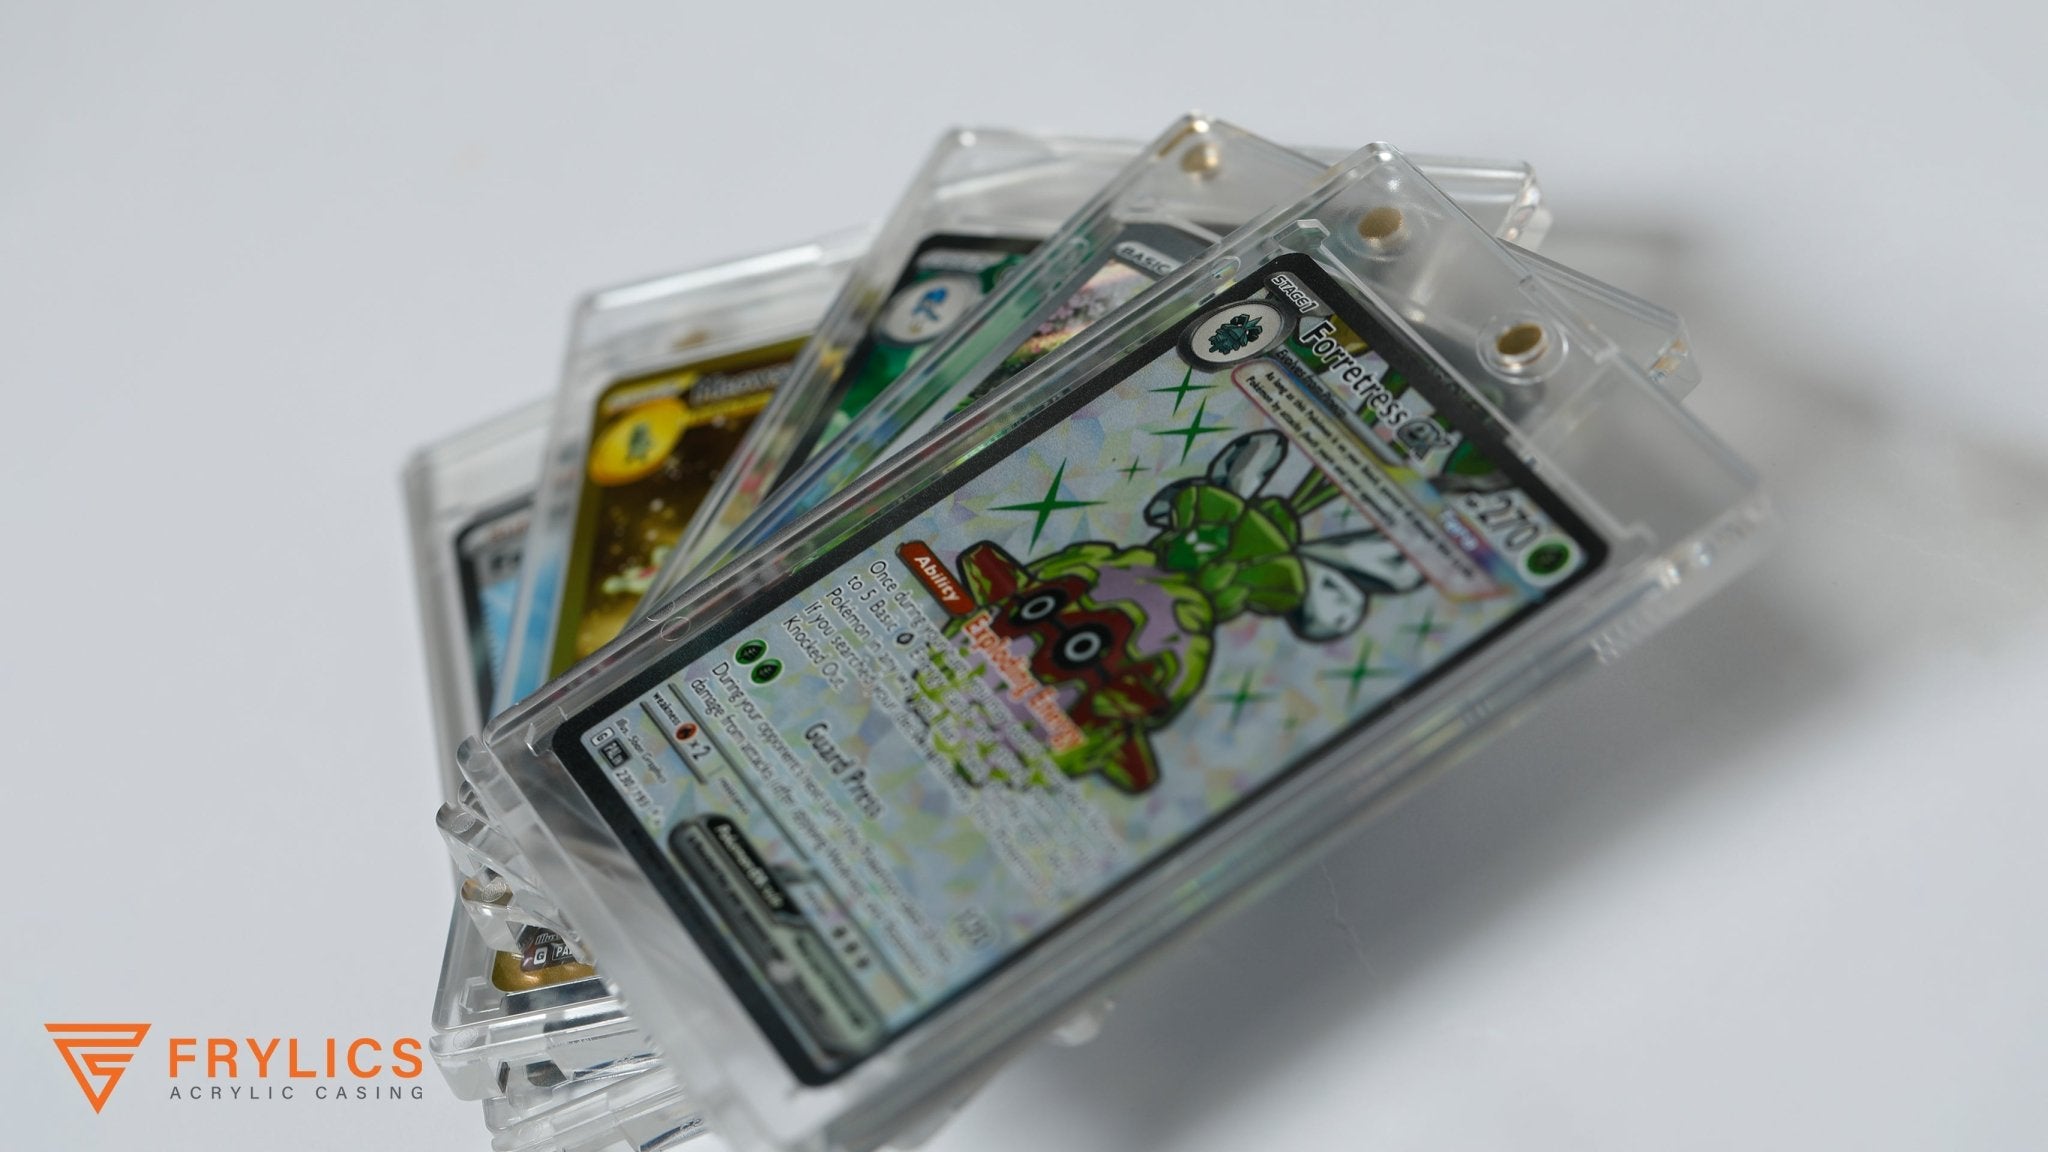 1-kaart acryl case - 5-pack - Frylics - 2e sfeerfoto van 5 acryl cases voor 1 kaart